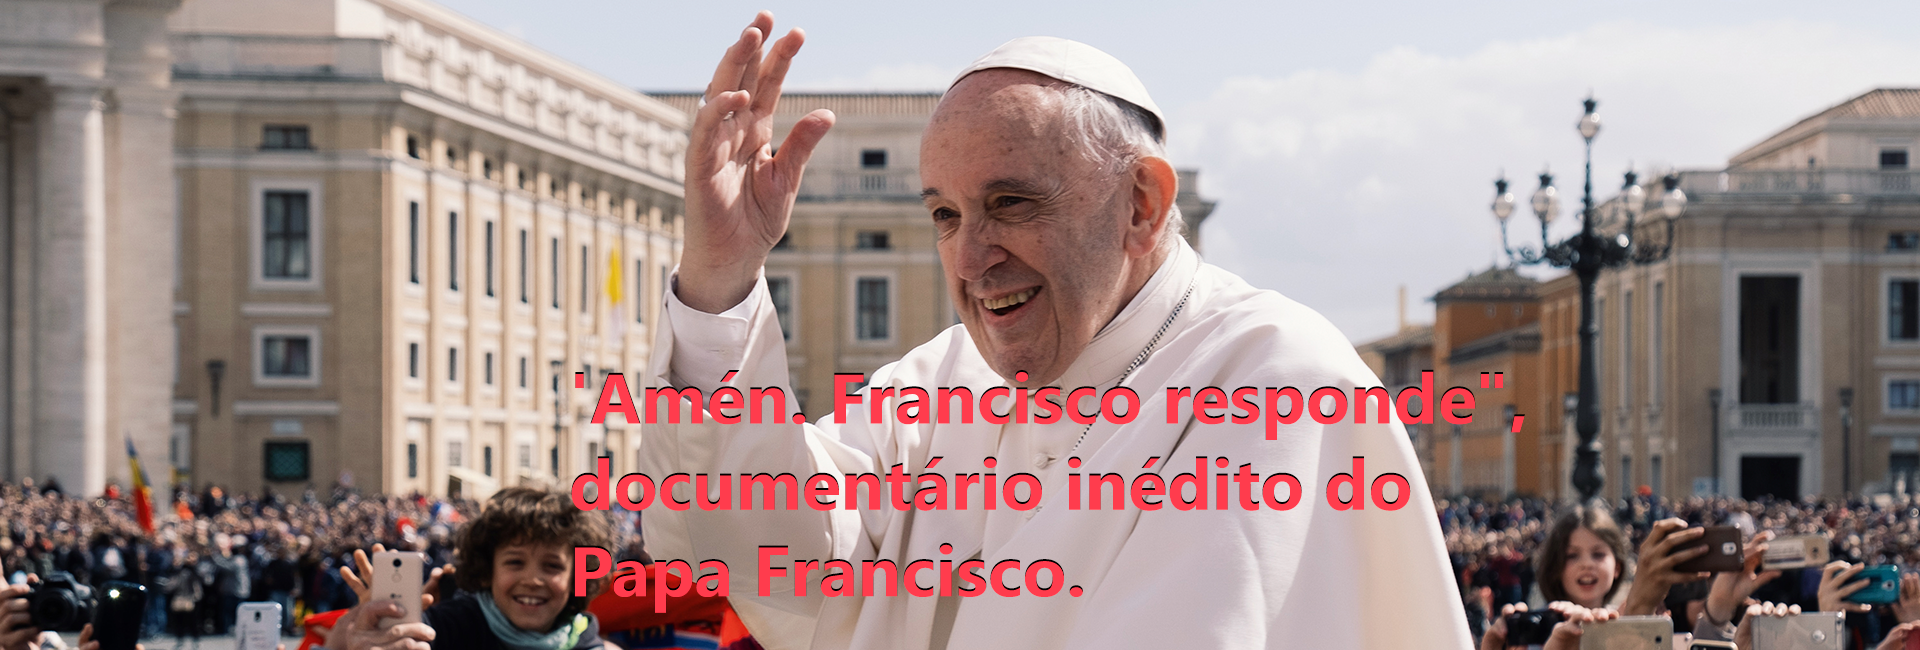 Diálogo aberto e sincero em documentário inédito do Papa